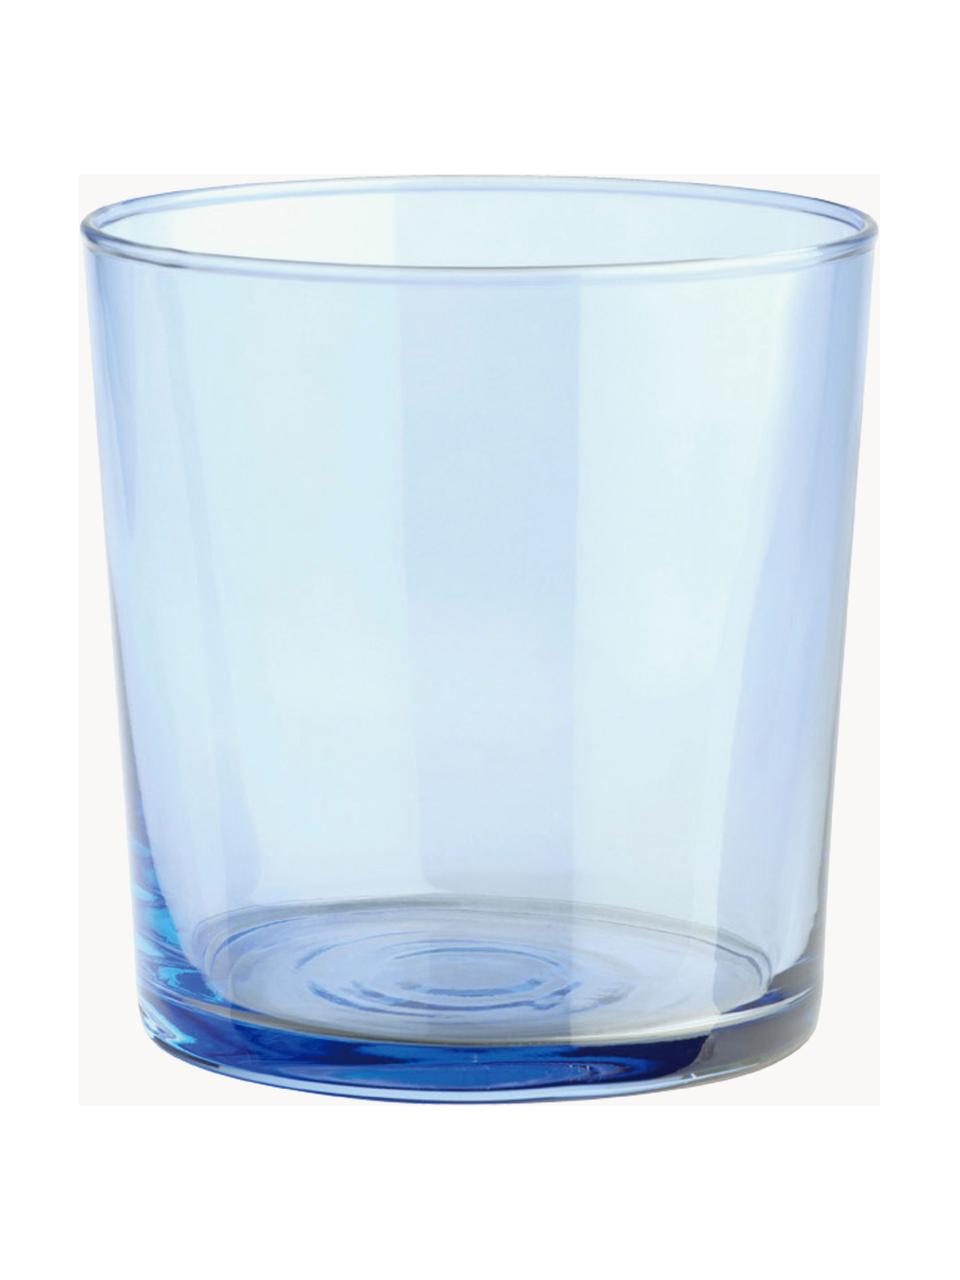 Wassergläser Lola, 6er-Set, Glas, Mehrfarbig, transparent, Ø 7 x H 9 cm, 345 ml